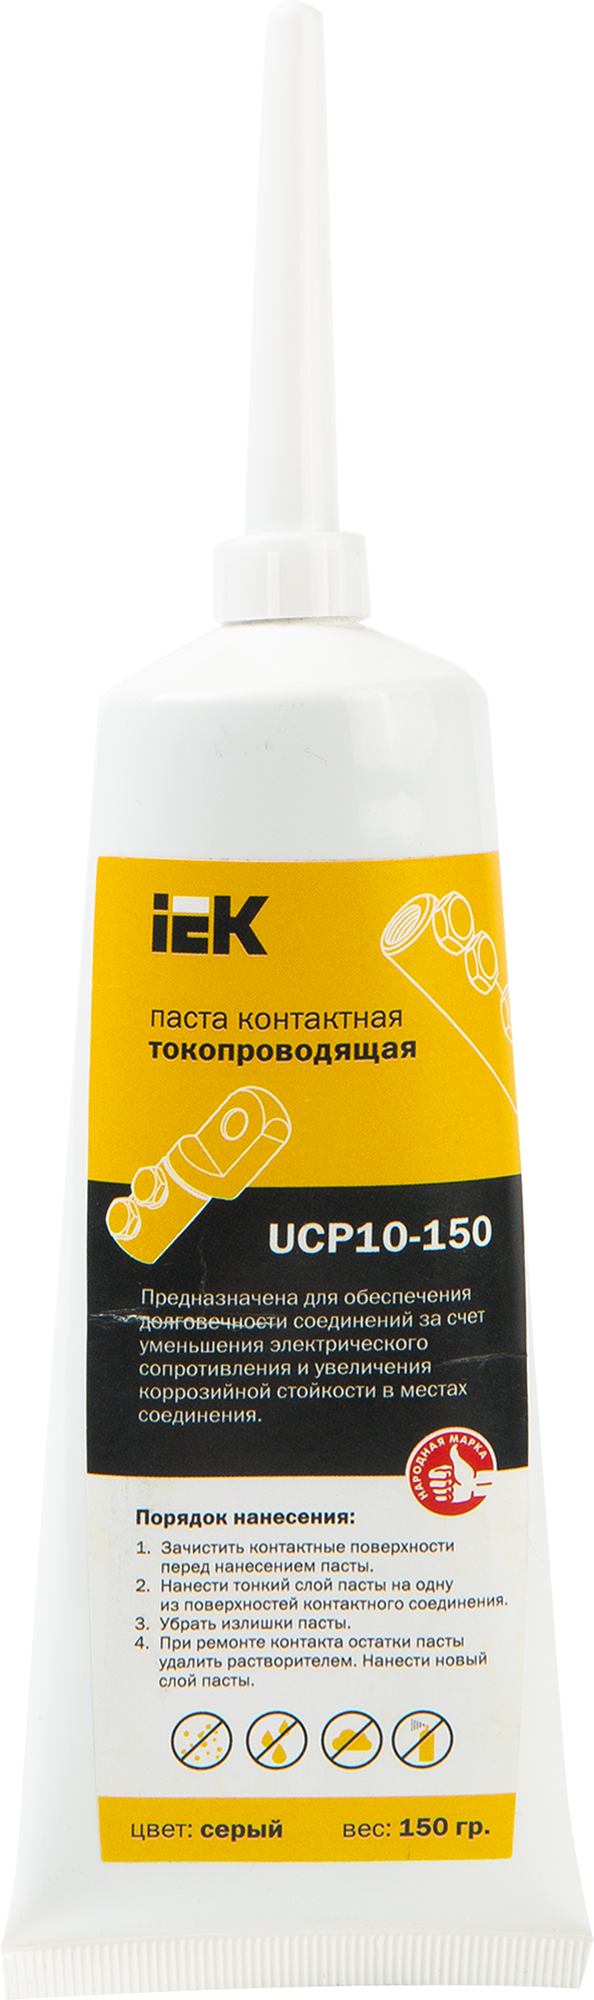  контактная токопроводящая IEK КПП-150 по цене 865 ₽/шт.  в .